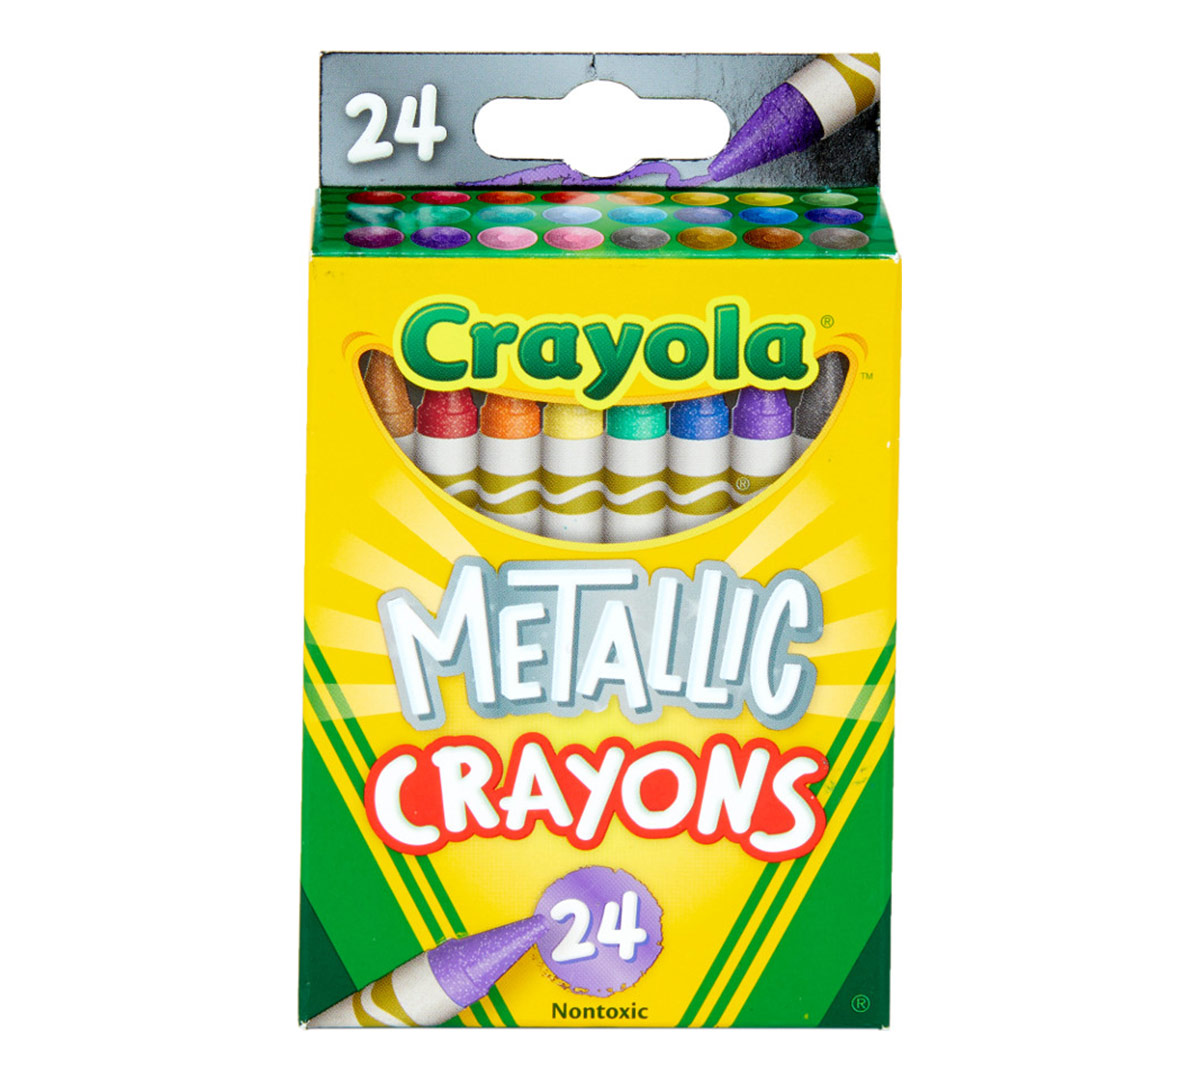 Download Metallic Crayons, 24 Count Crayola Crayons | Crayola.com | Crayola